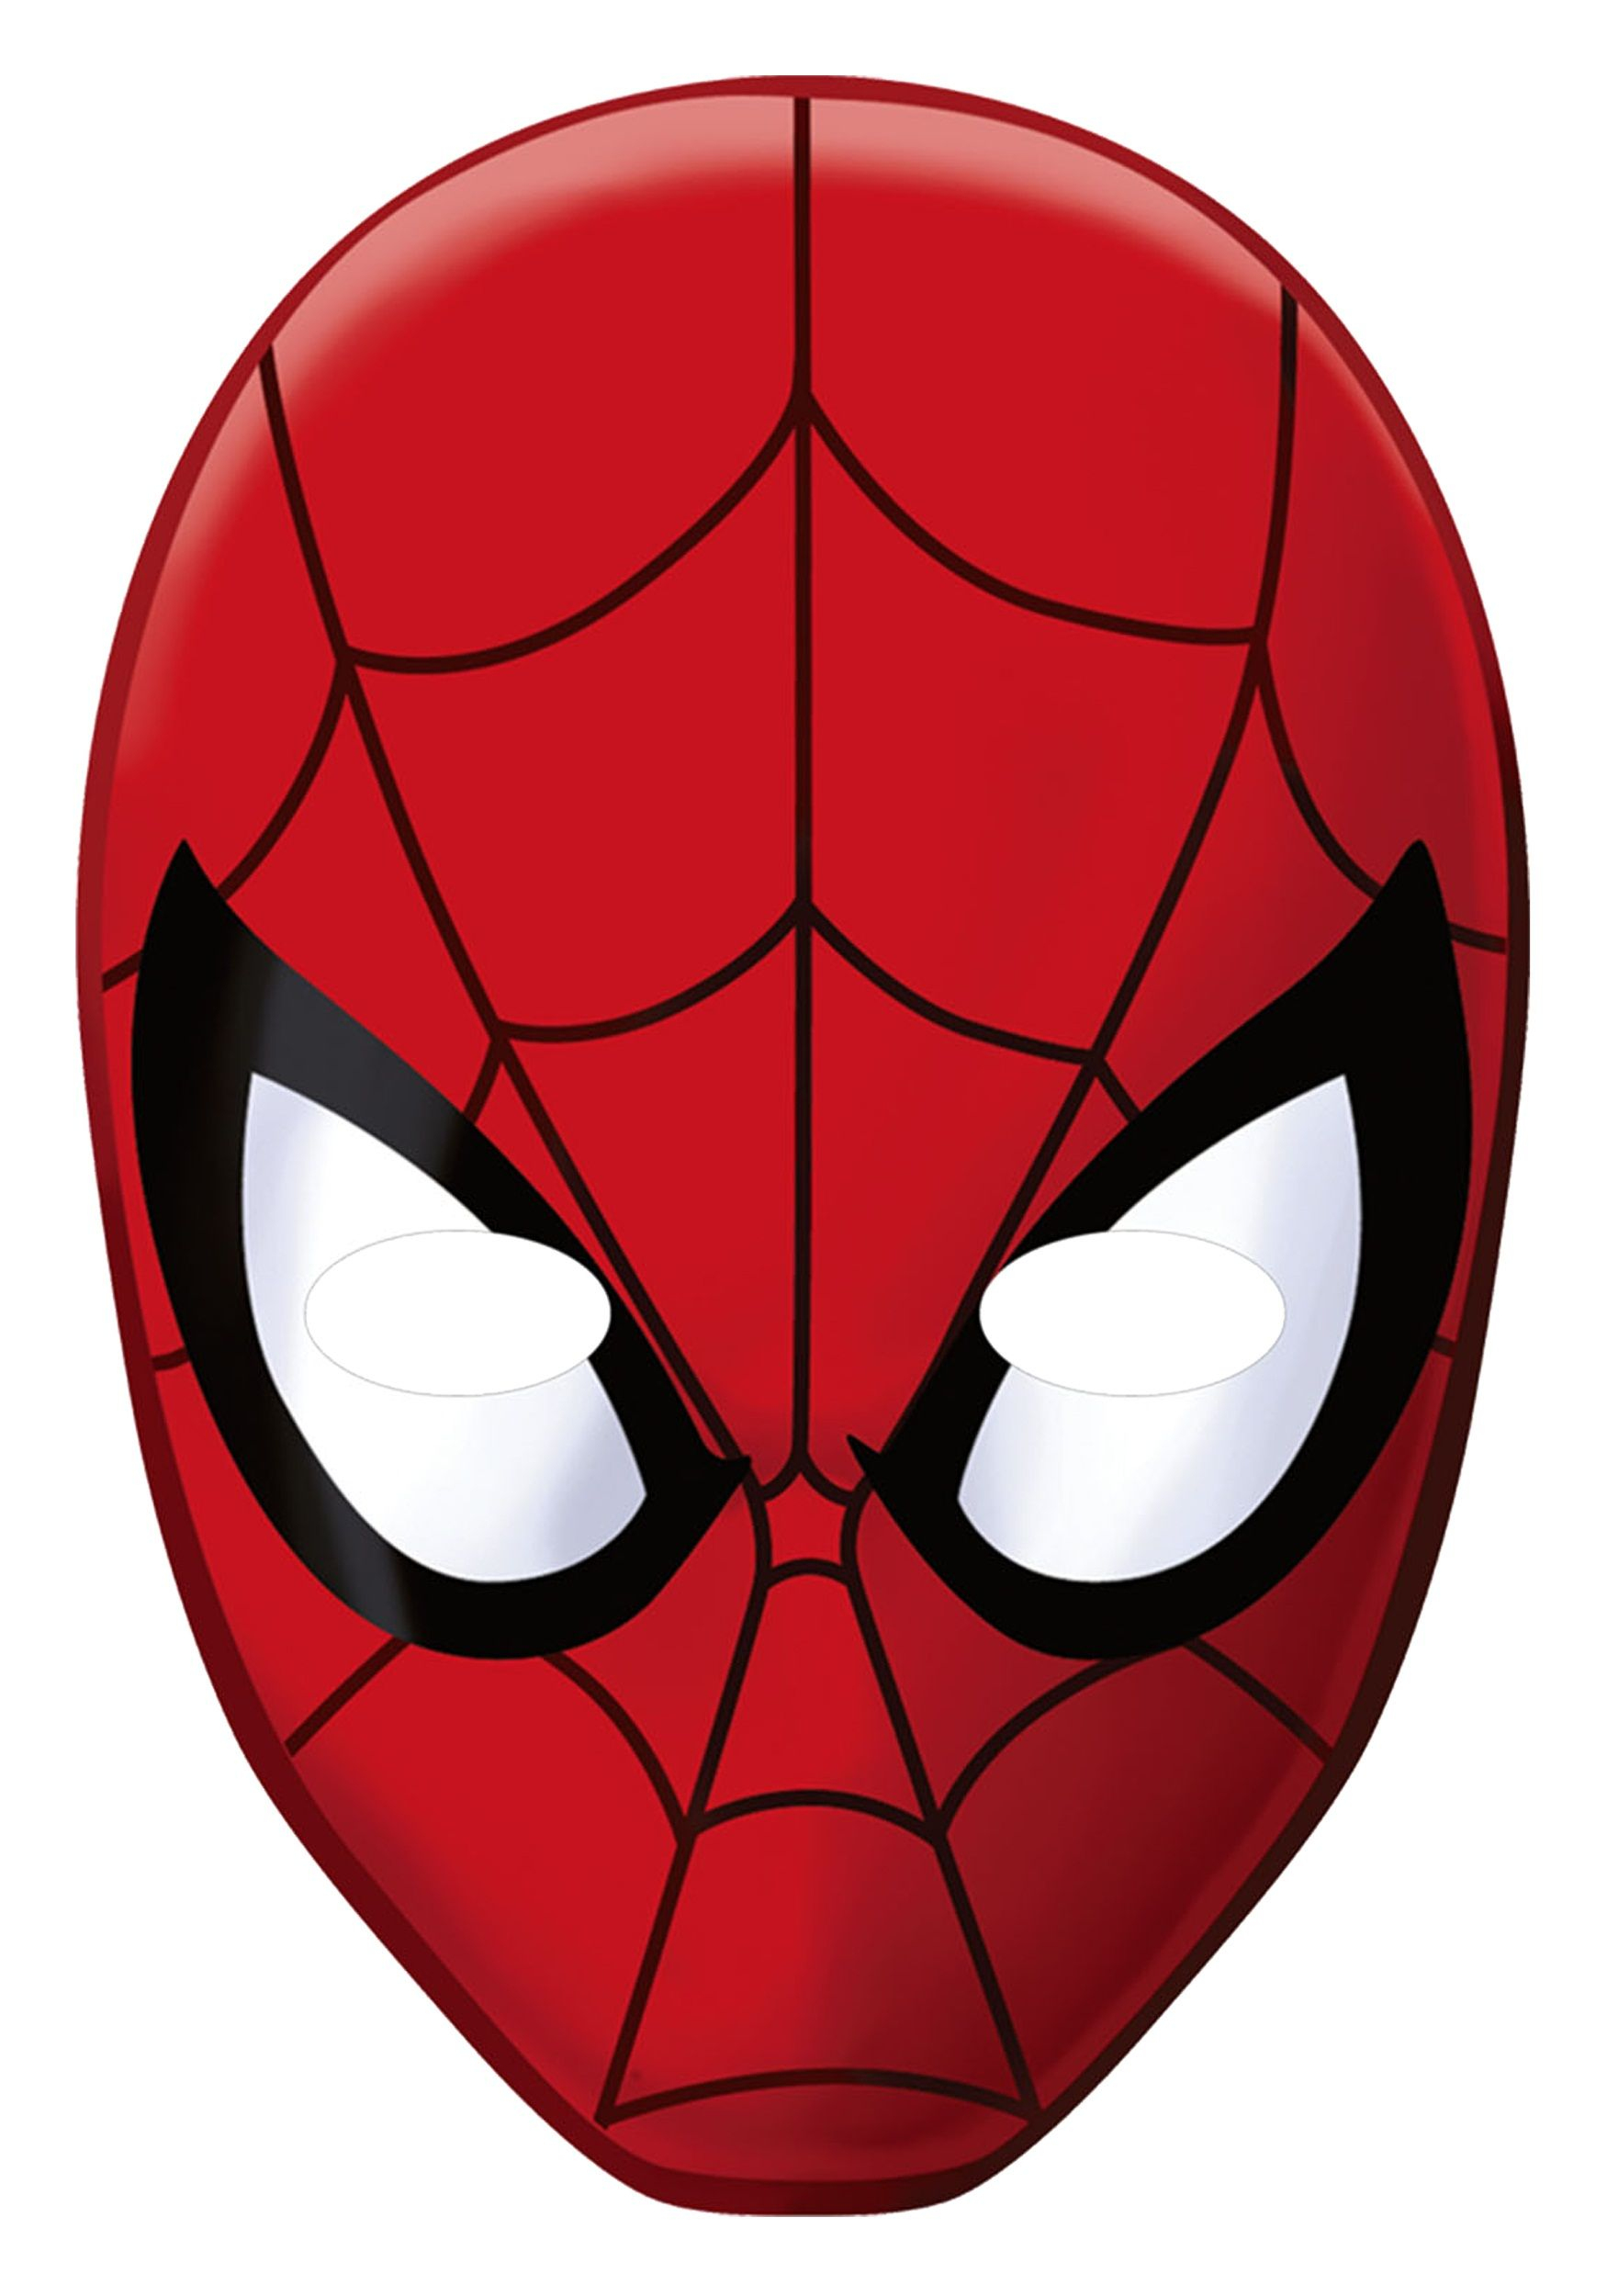 Imprimer Spieder Man Masque  Epingle Sur Zoey Dress Up intérieur Coloriage Masque Spiderman 